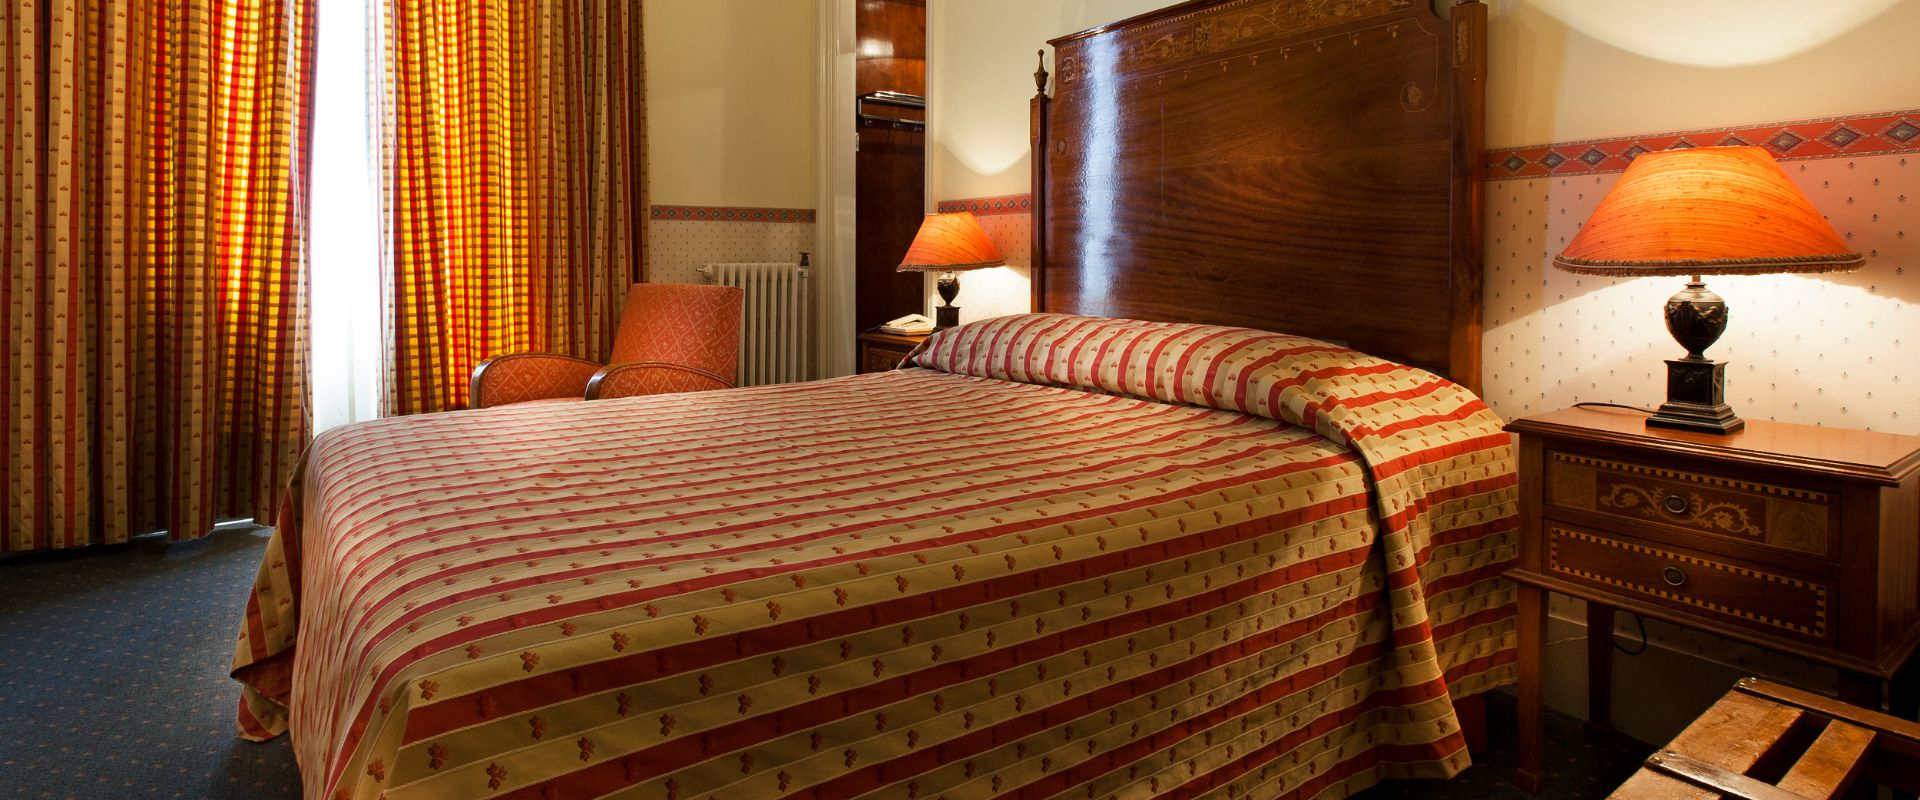 Quarto superior com cama adicional  Palace Hotel Bussaco Coimbra